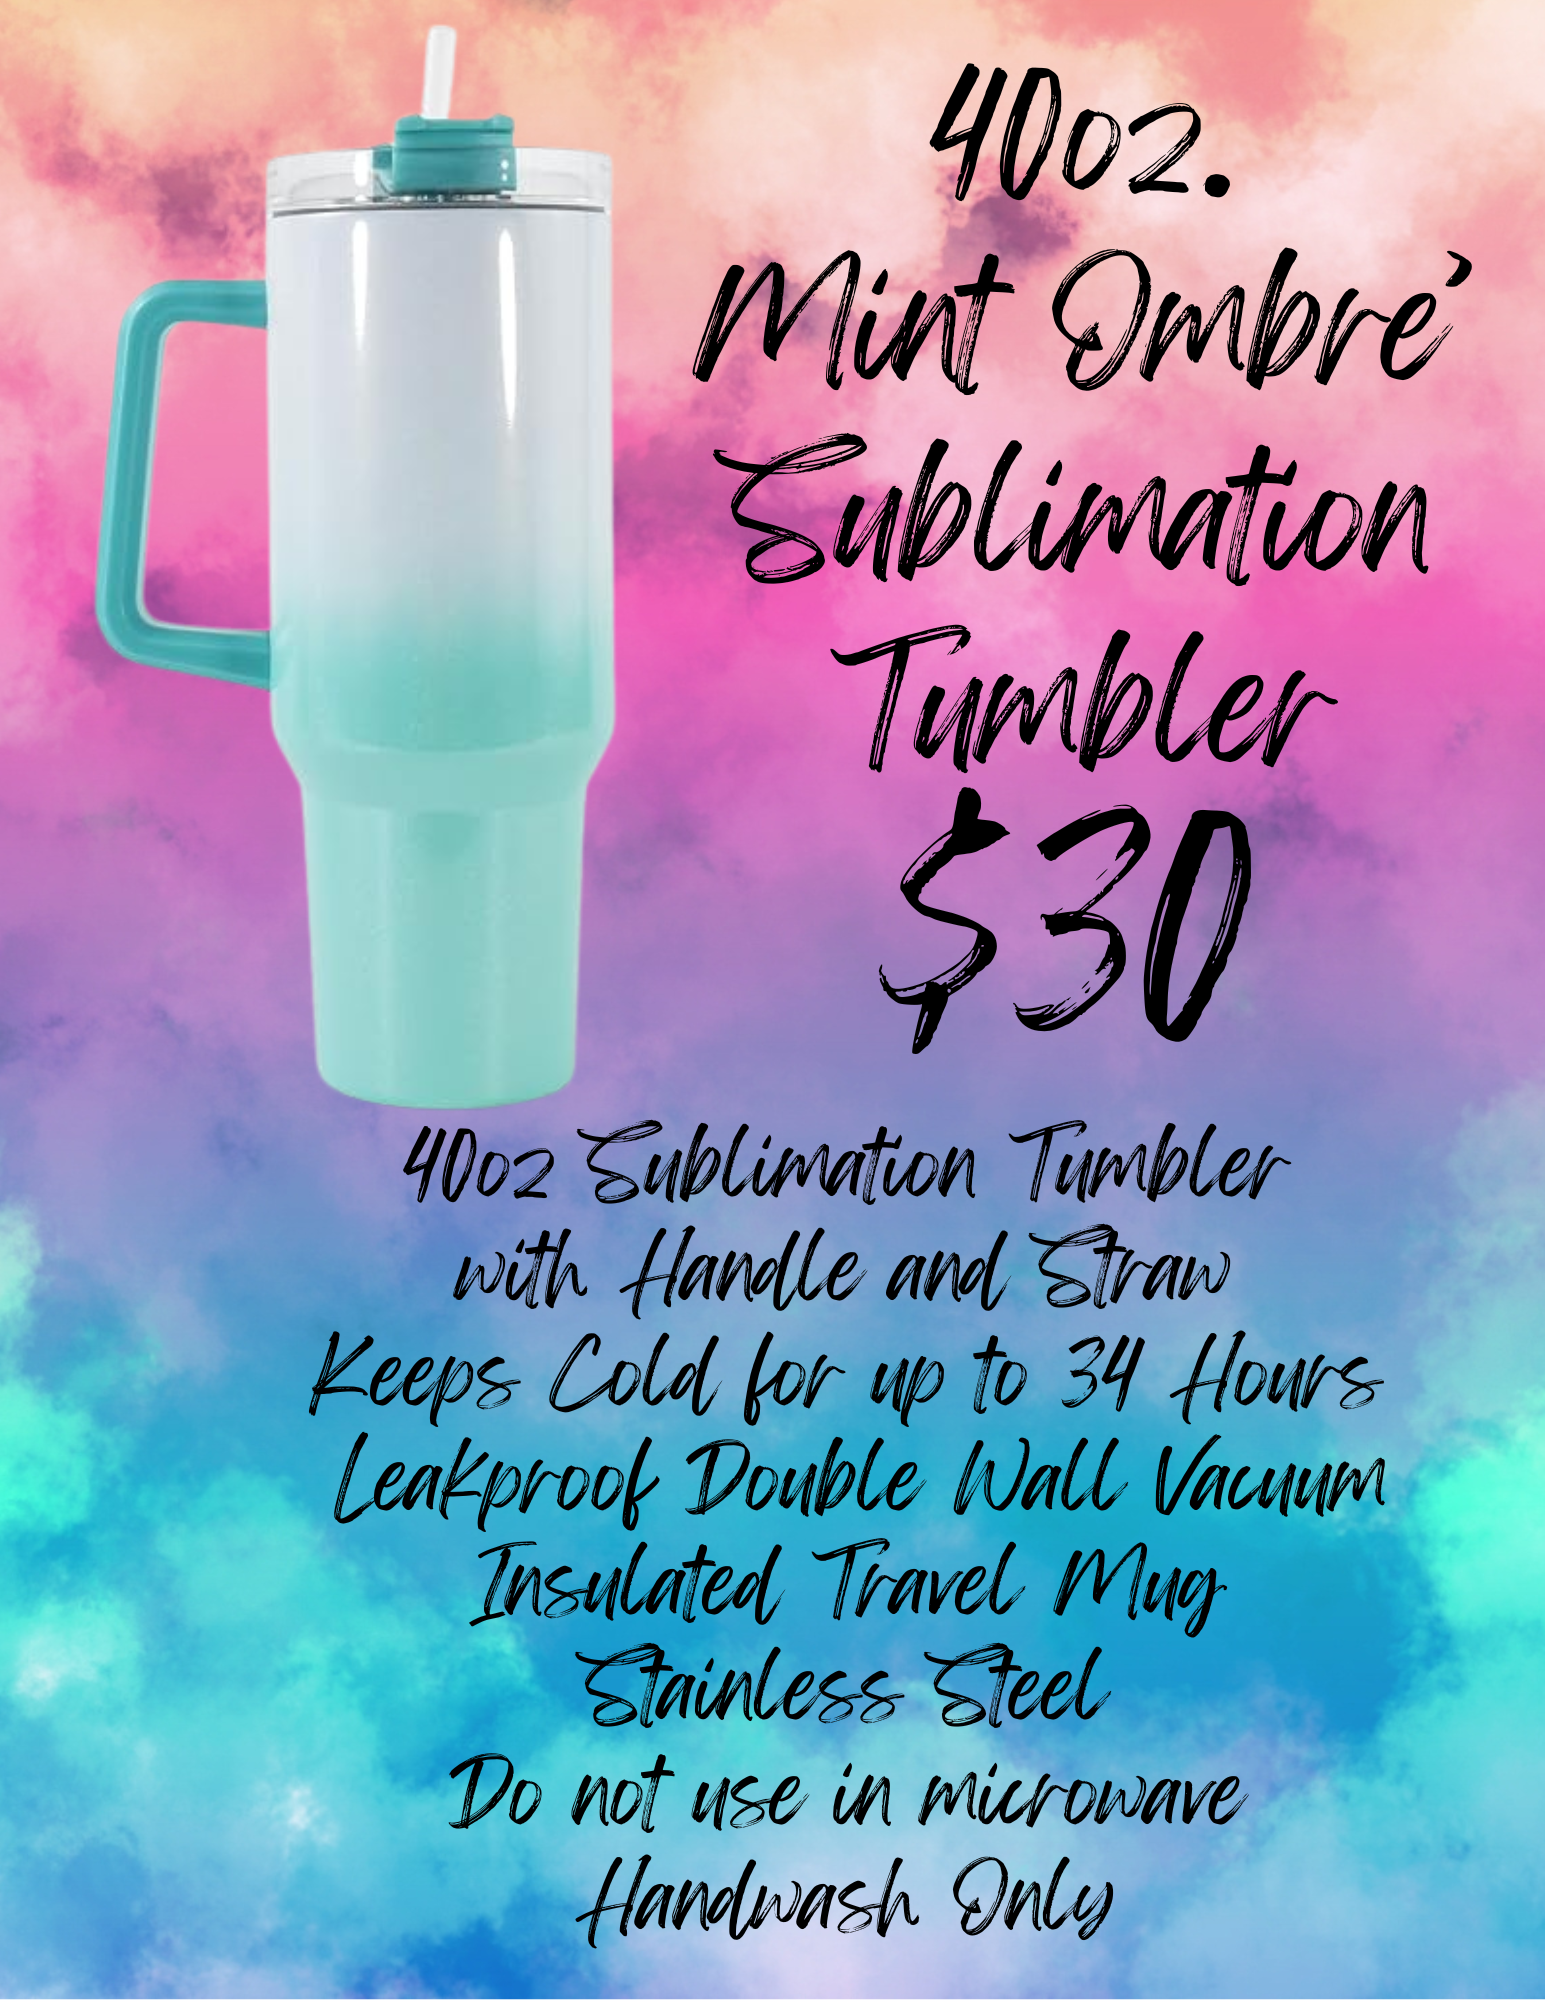 40oz Mint Ombre' Tumbler (Sublimation)